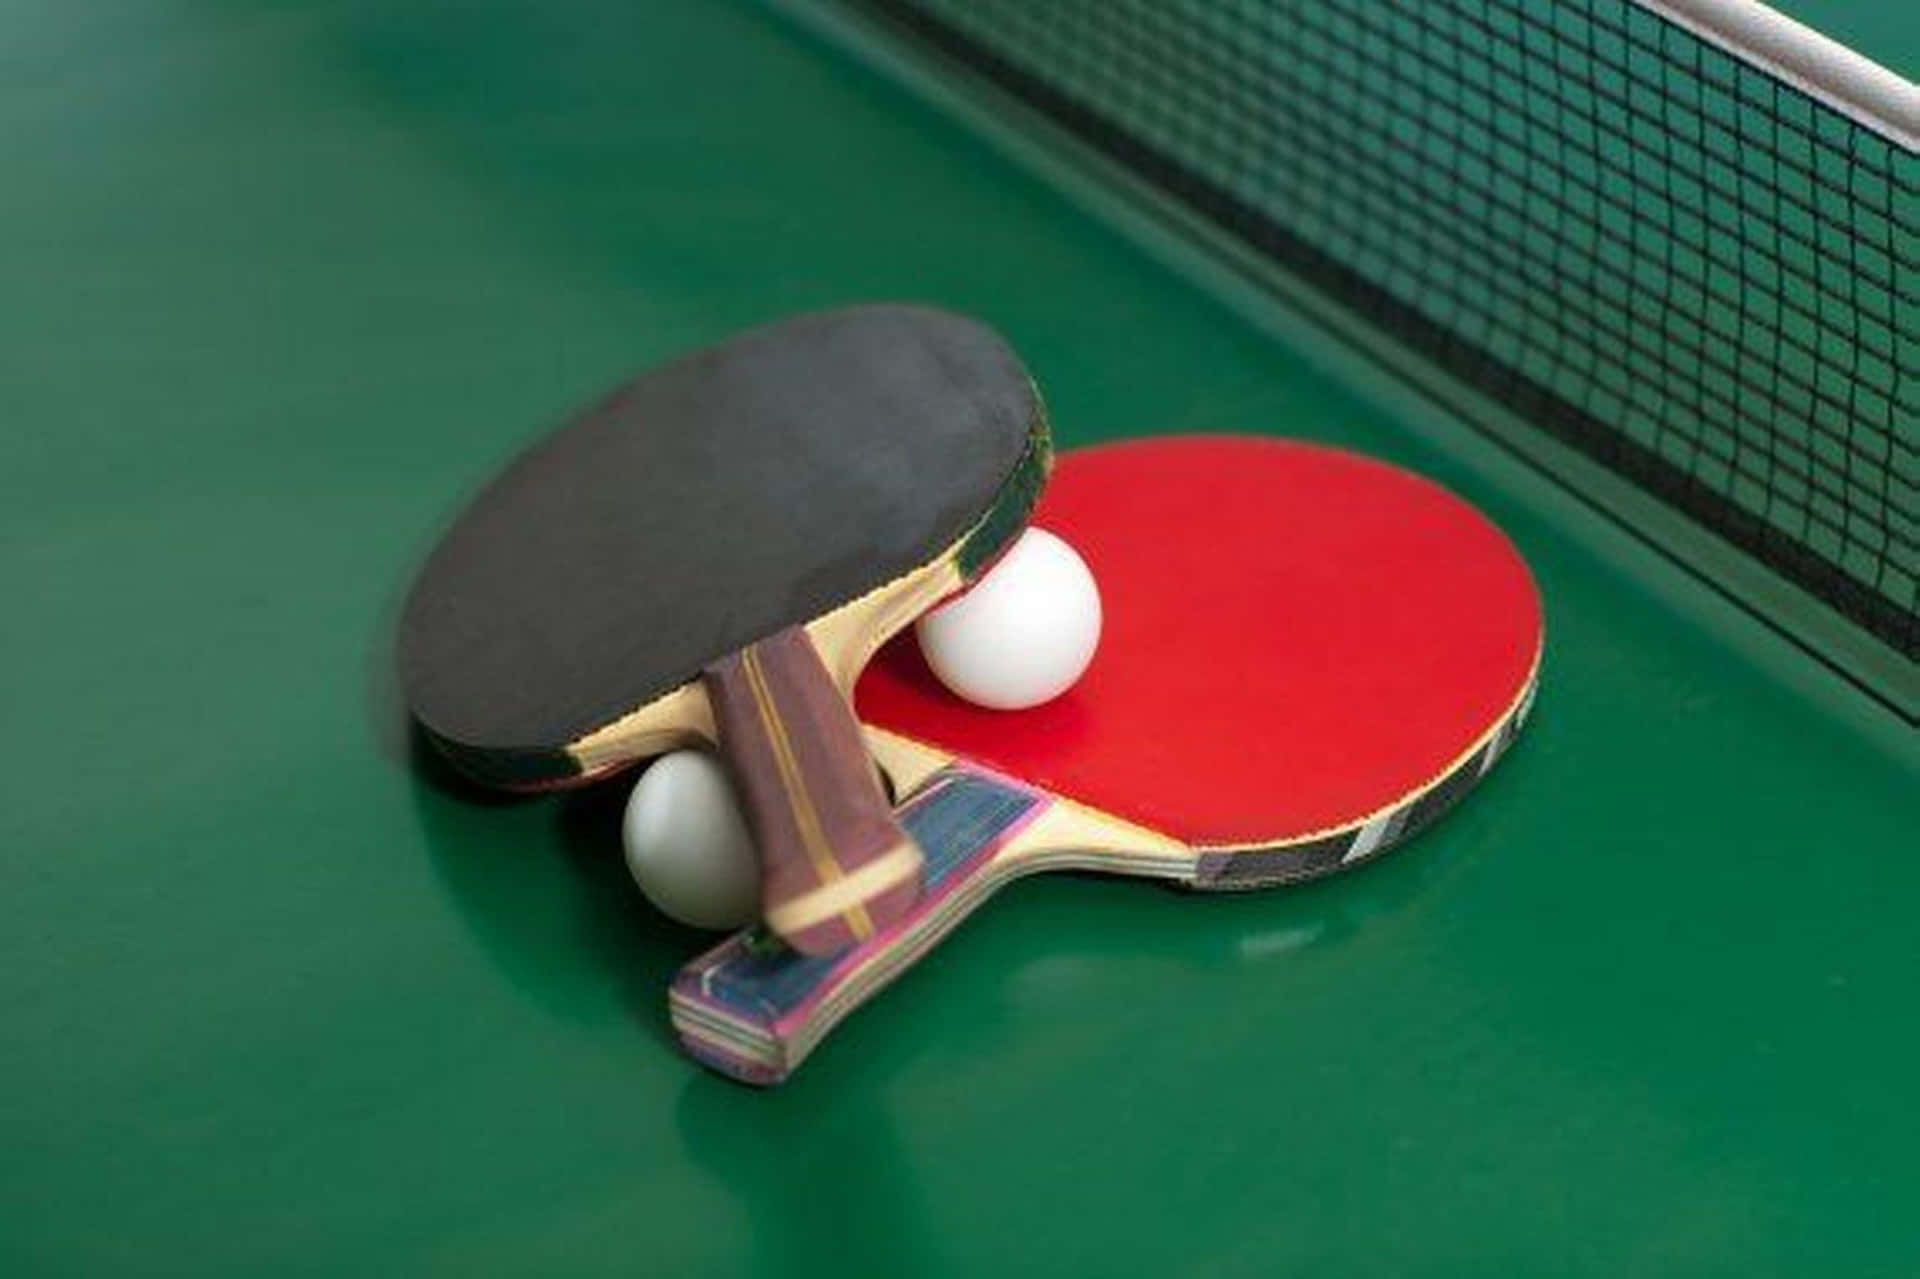 Racchetteda Ping Pong Su Un Tavolo Verde